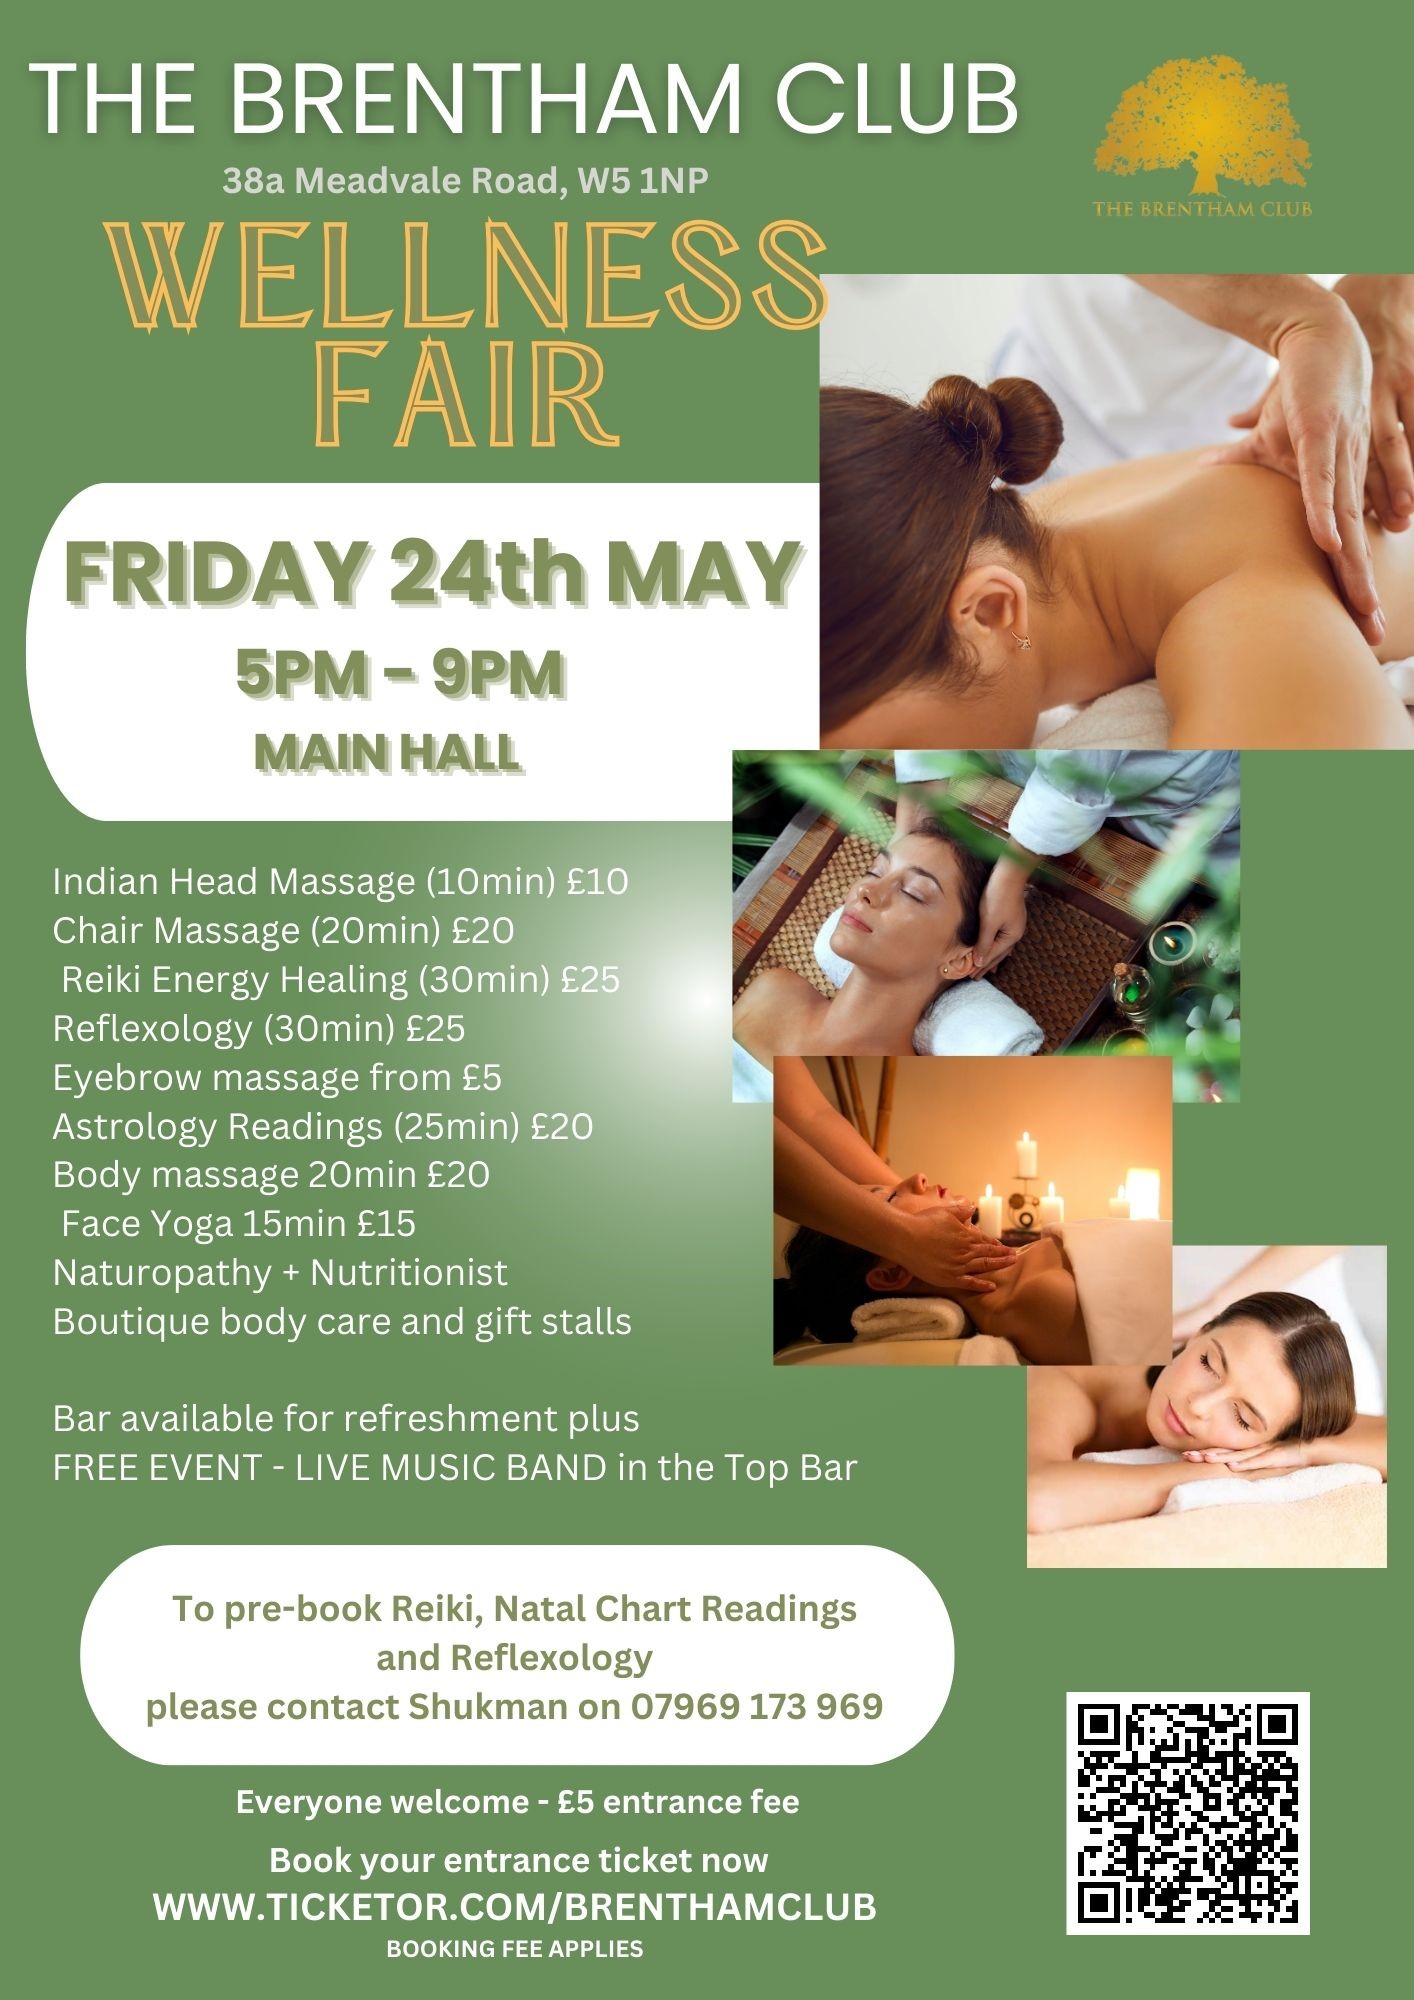 Wellness Fair  on mai 24, 17:00@The Brentham Club - Achetez des billets et obtenez des informations surBrenthamclub.co.uk 